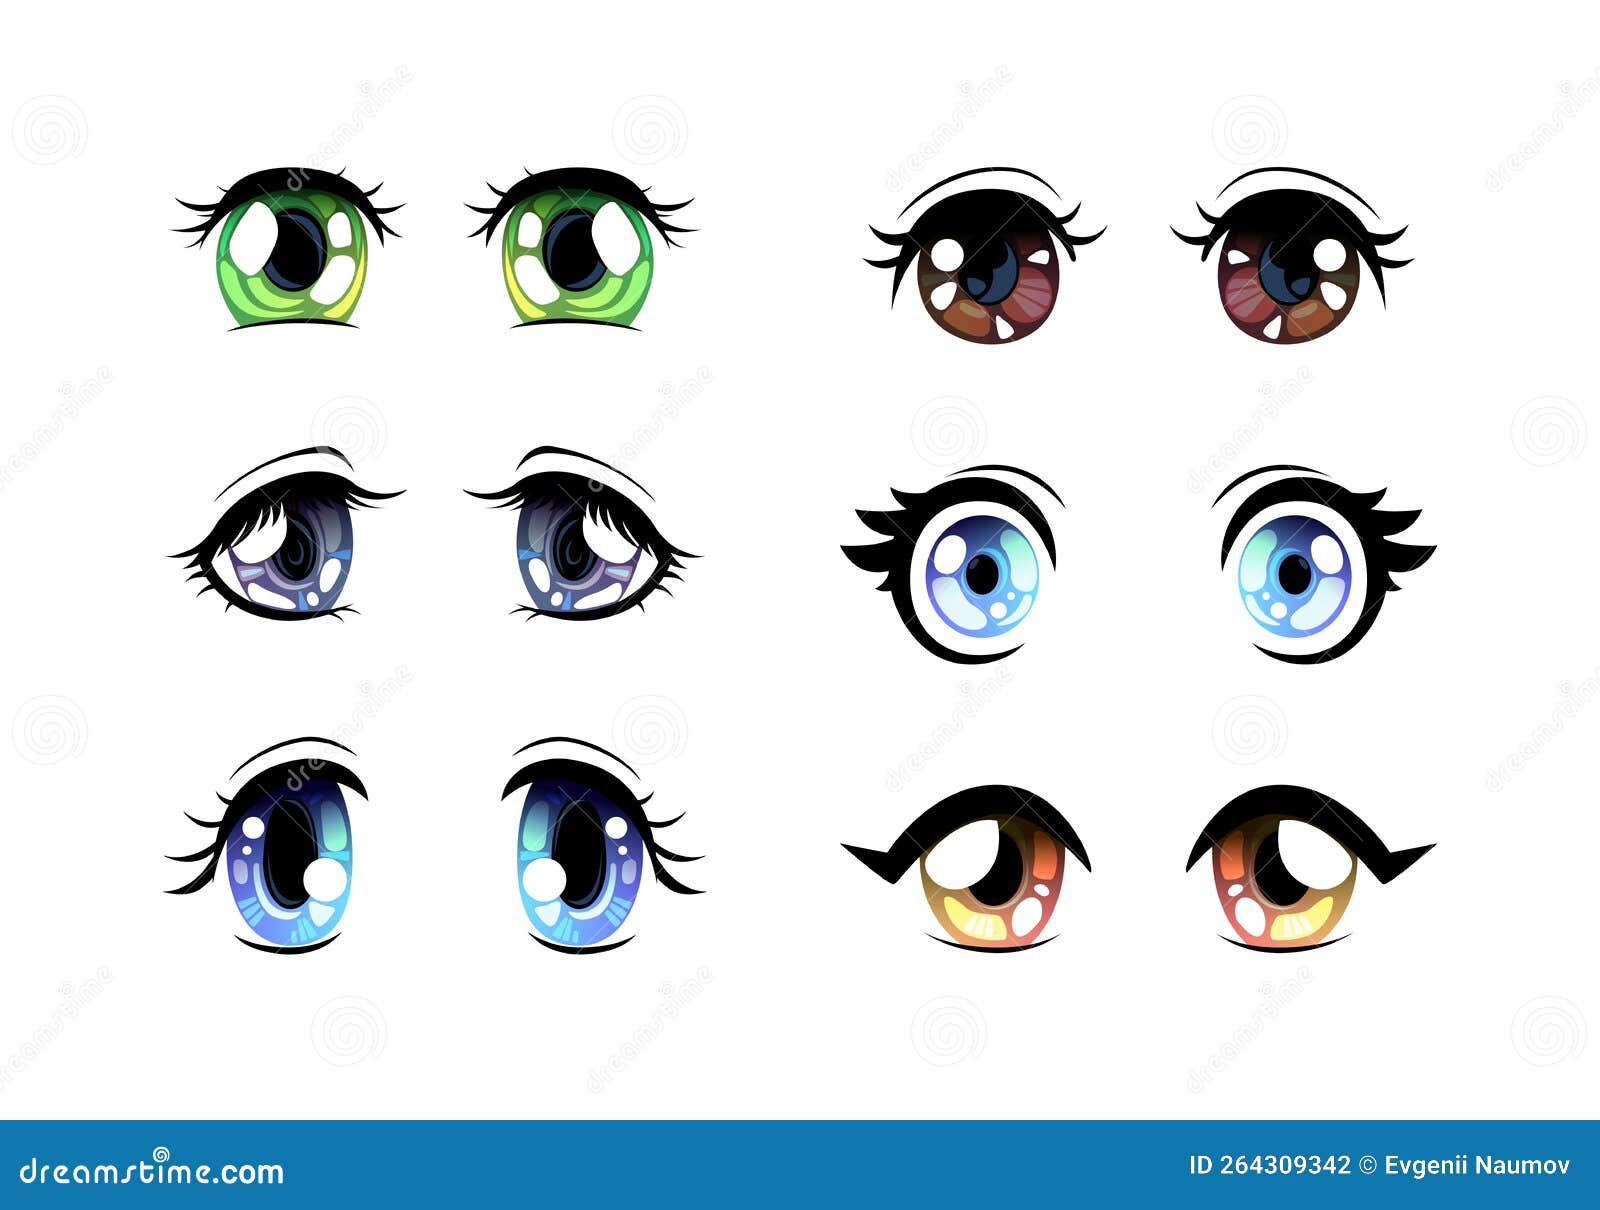 Colorful Manga or Anime Style Eyes with Black Eyelashes Vector Set ...